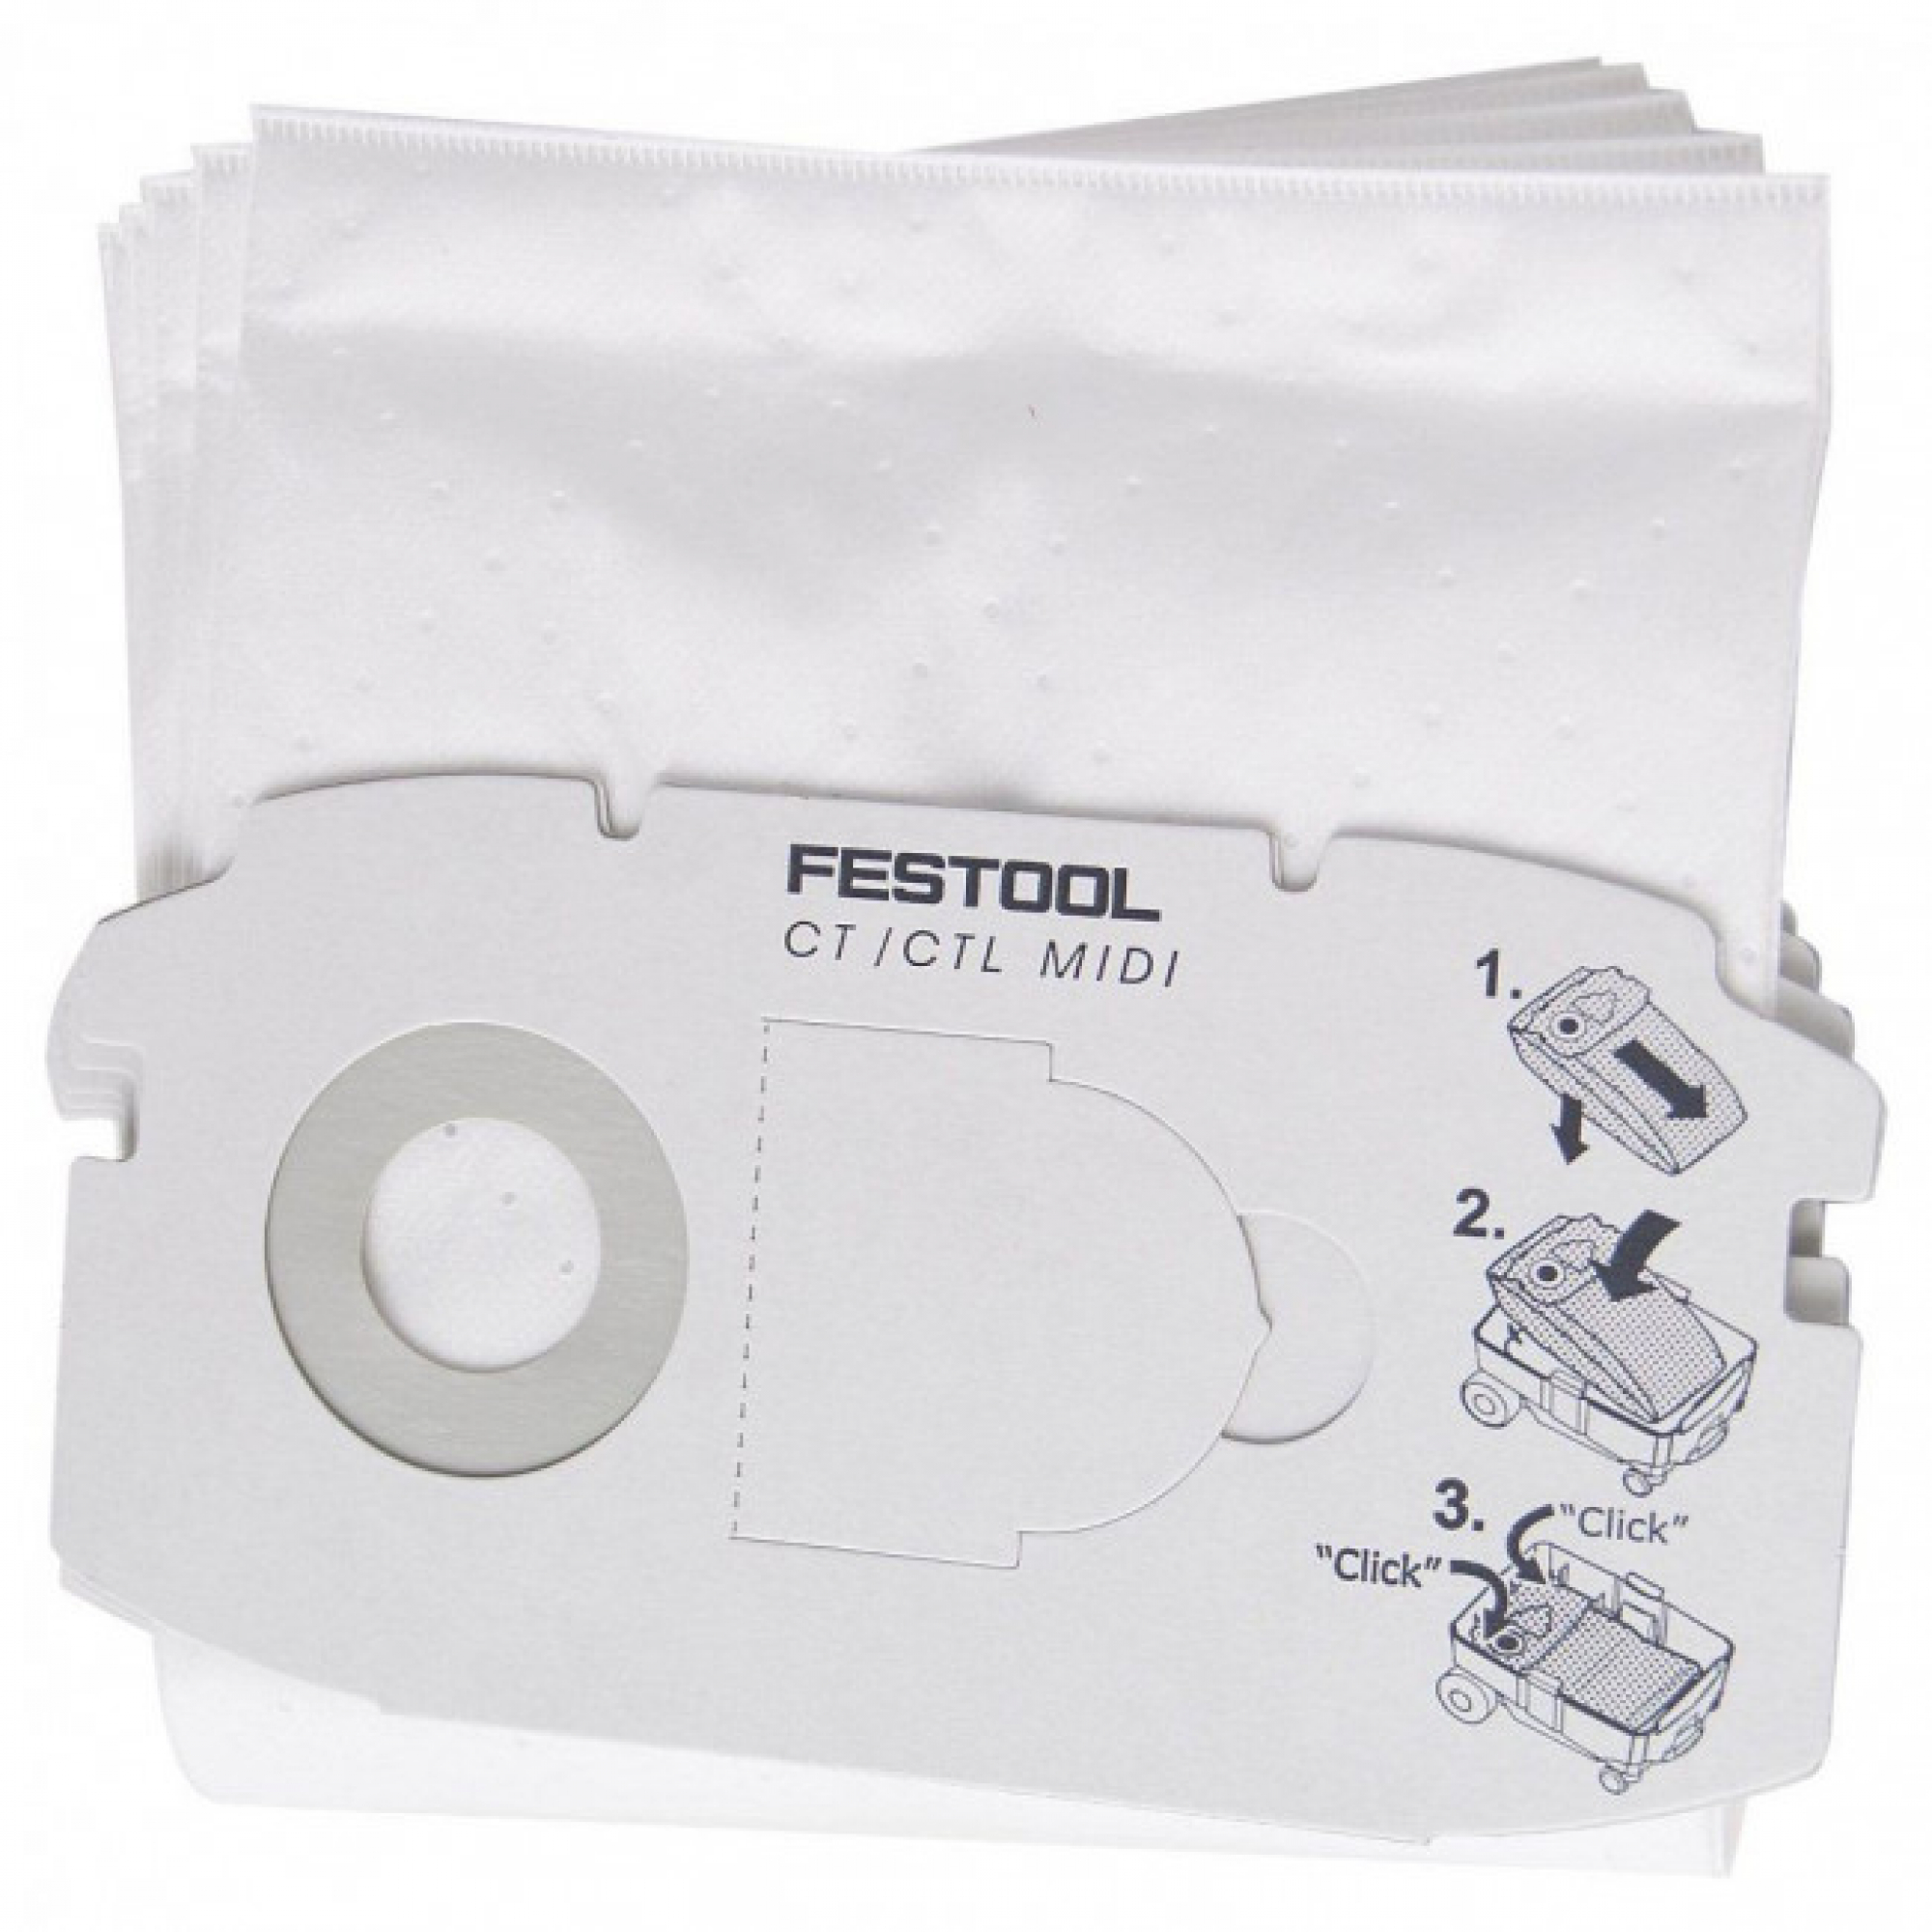 FESTOOL SELFCLEAN filter bag for CTL MIDI